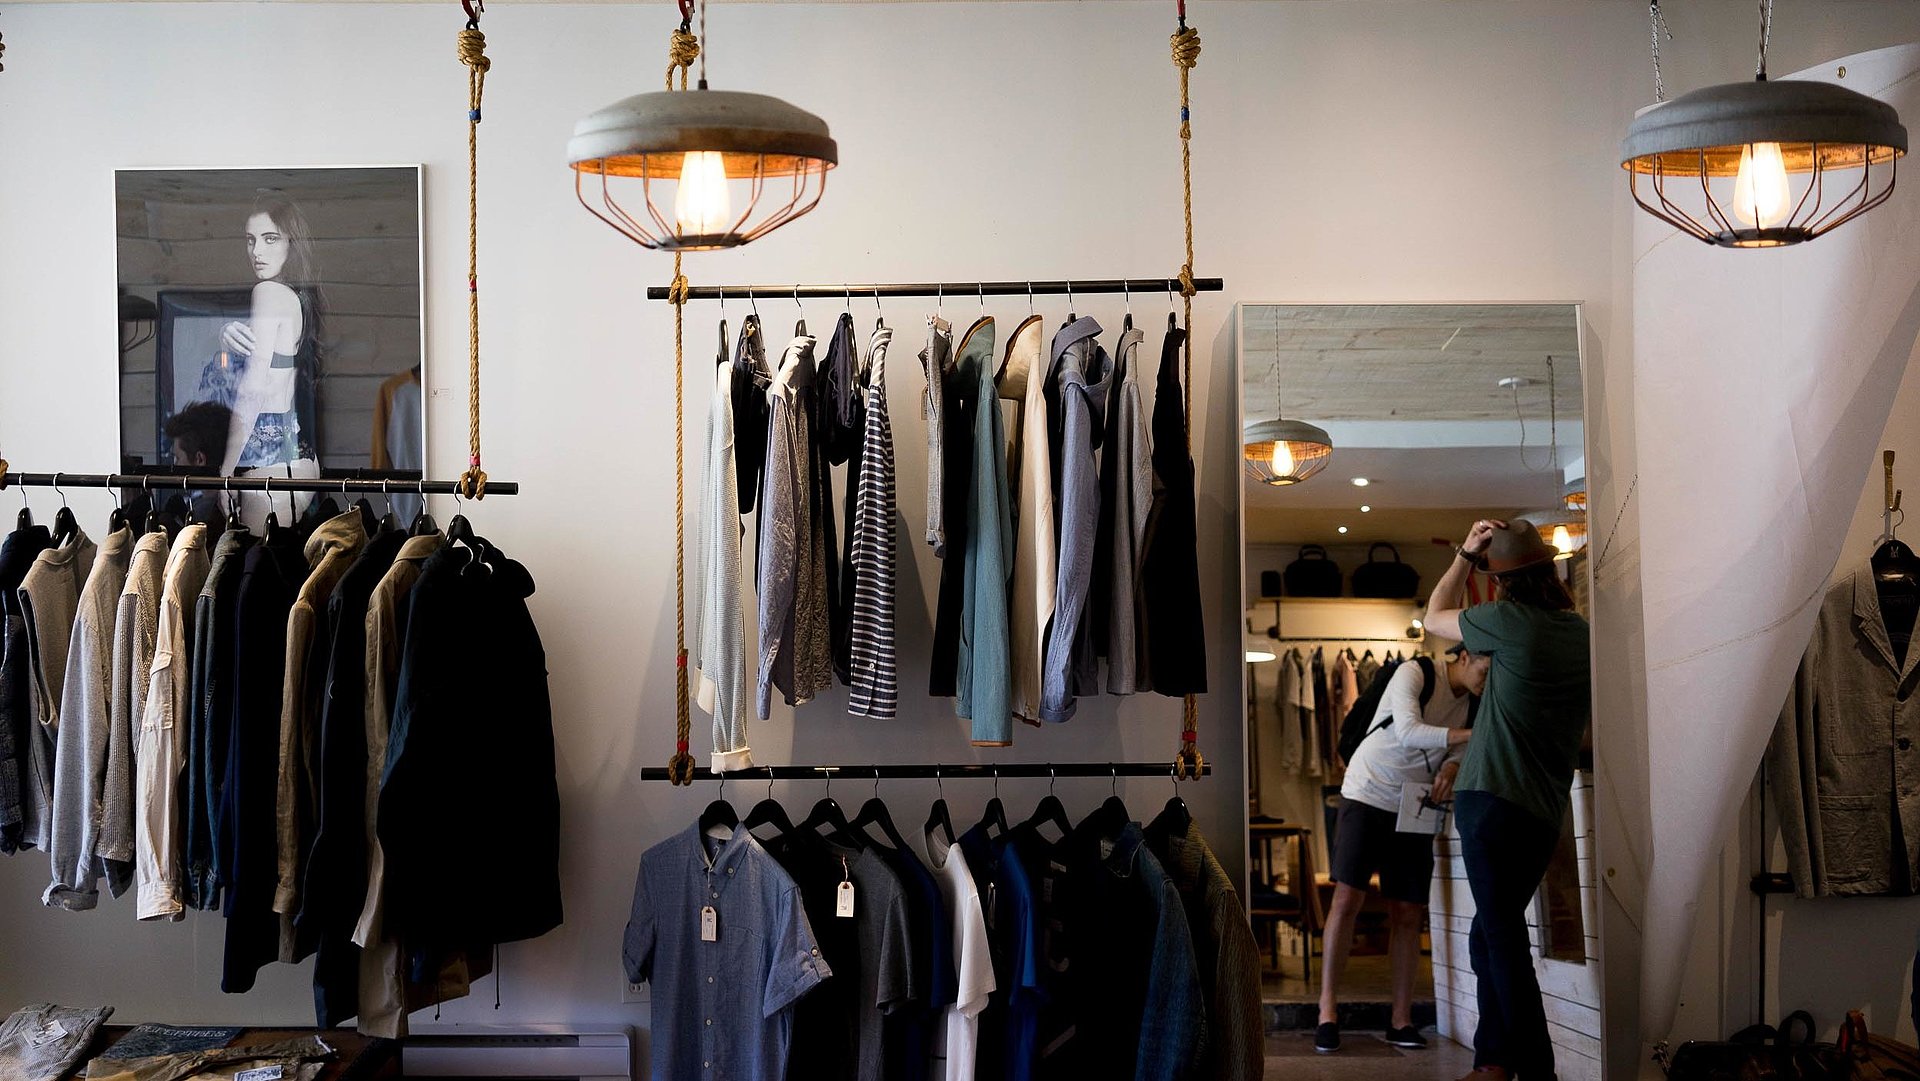 Lagerverkauf und Outlets im Fichtelgebirge - Kleidungsgeschäft mit verschiedenen Oberteilen; T-Shirts, Hemden, Sweatshirts; Spiegel auf rechter Seite zeigt Reflektion von zwei Kunden